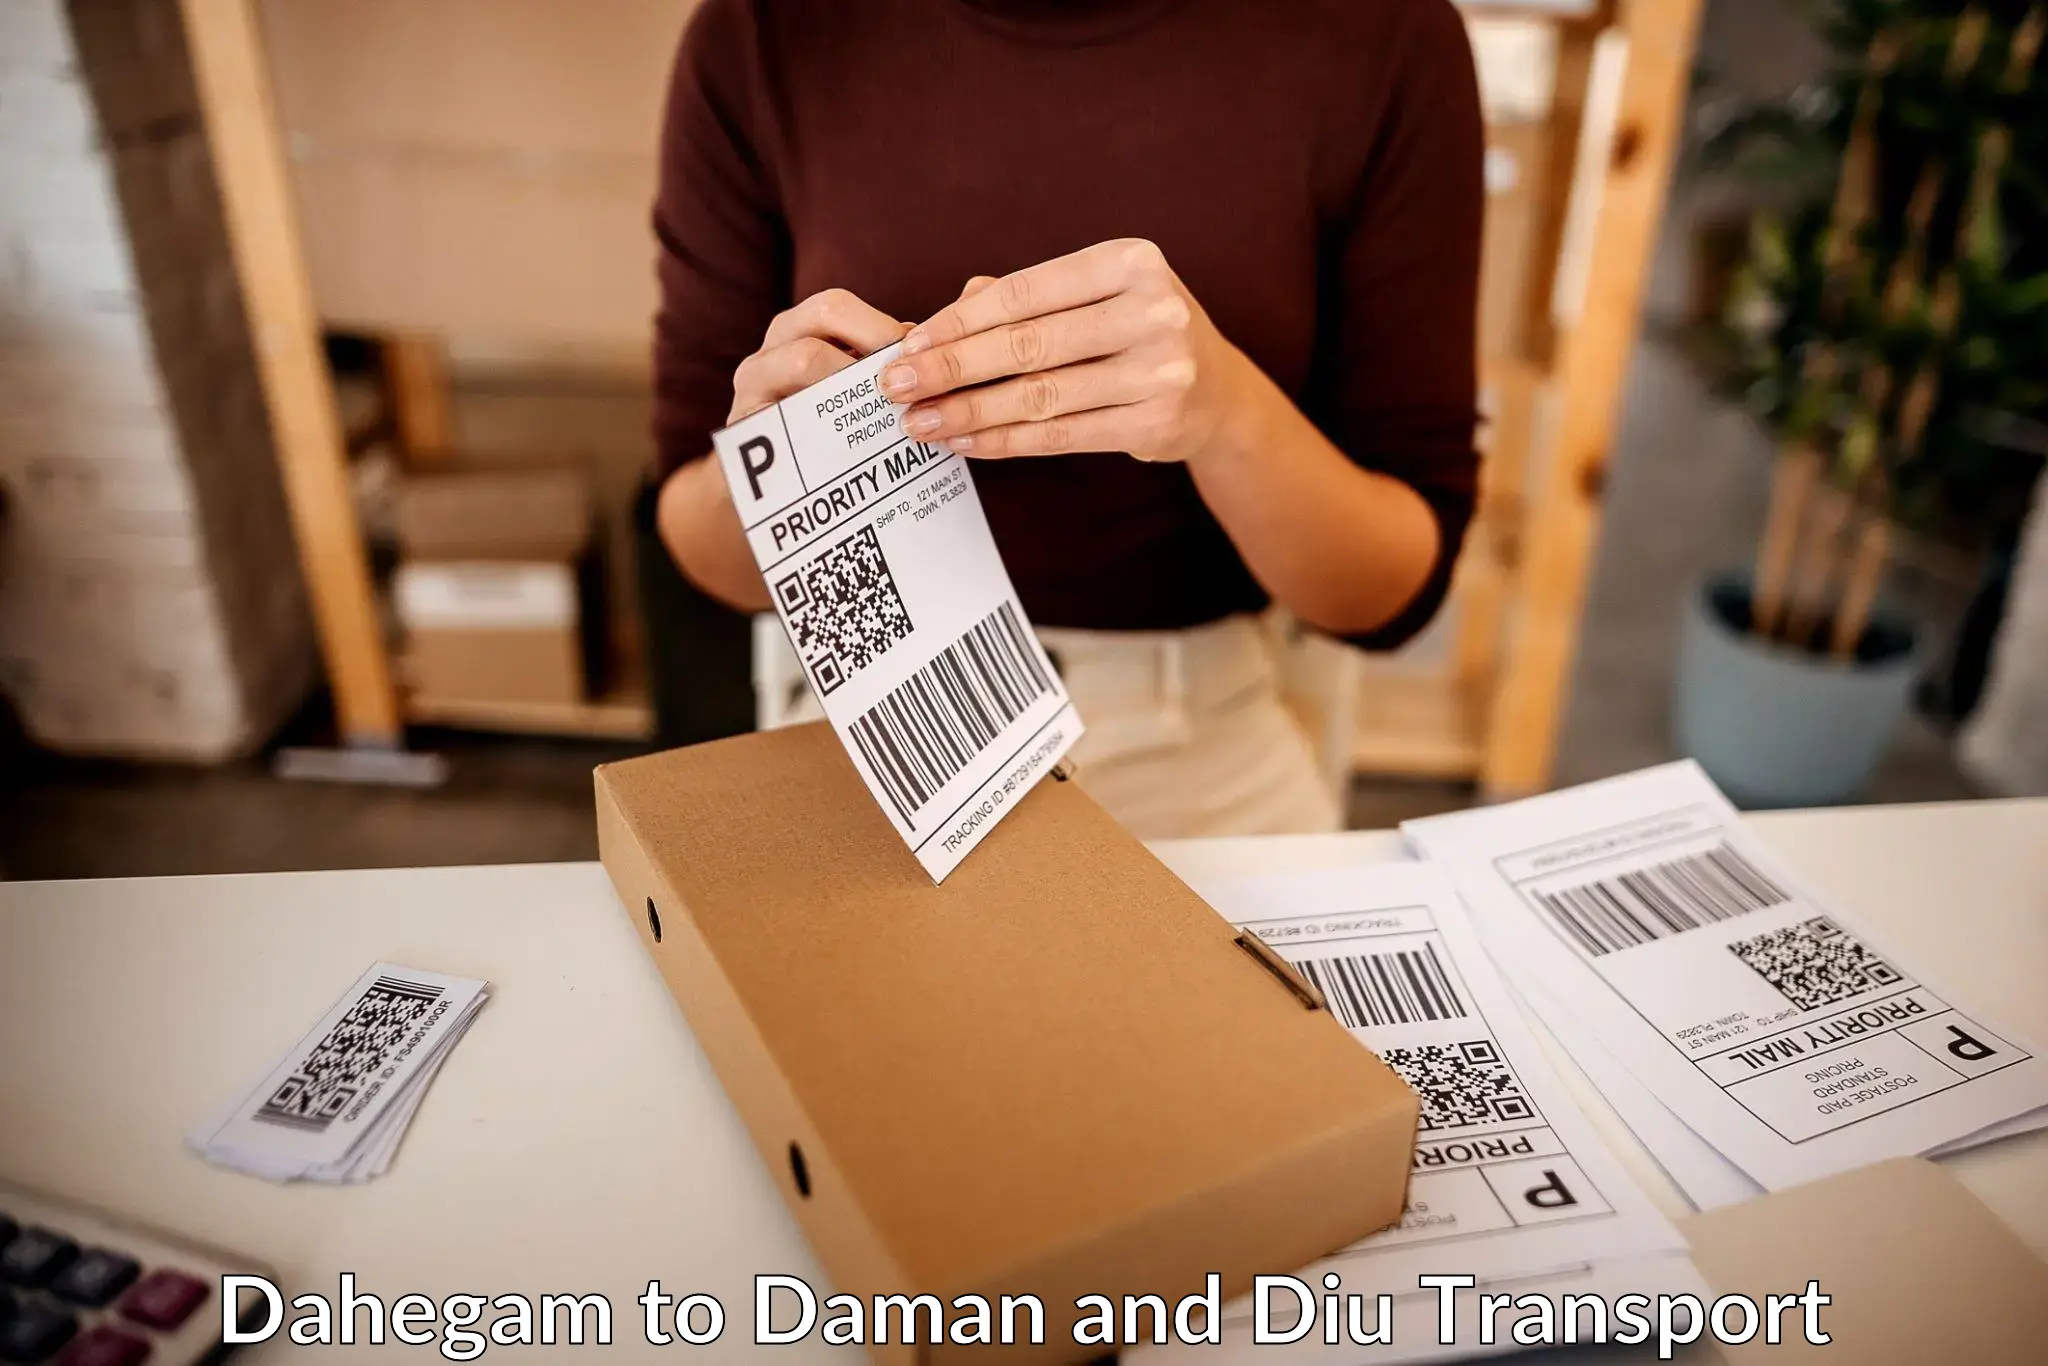 Delivery service Dahegam to Daman